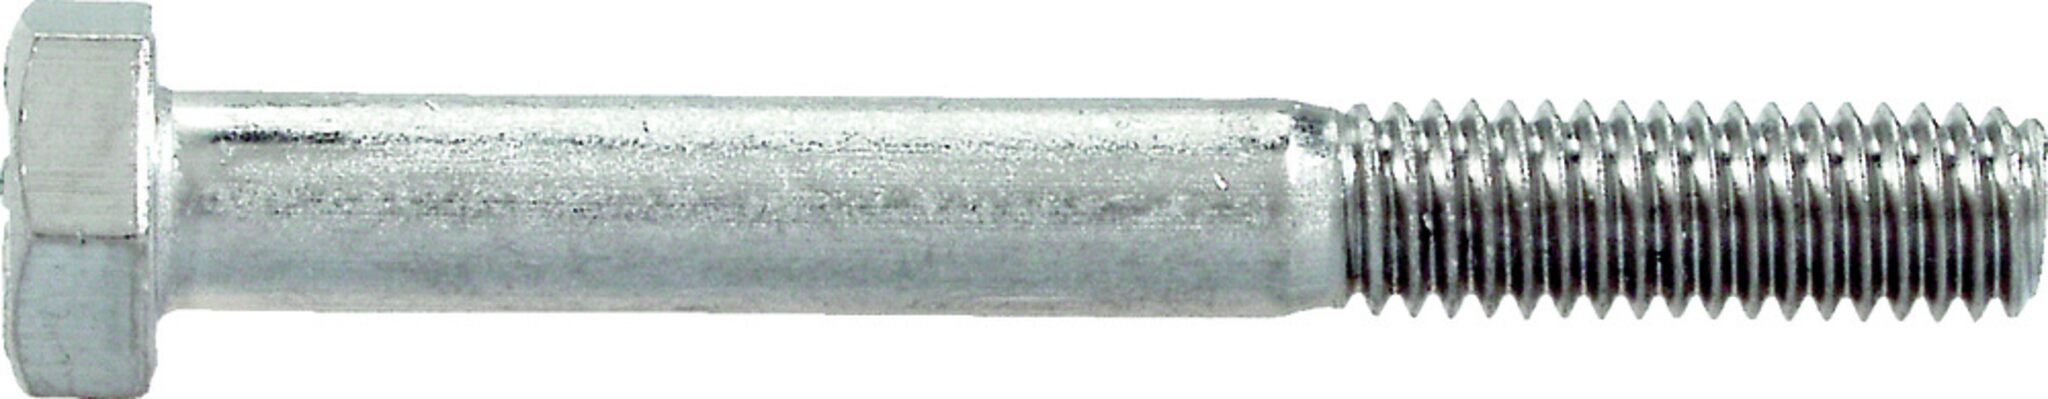 Hexagonal shaft bolt with nut (DIN 931/934-A4)